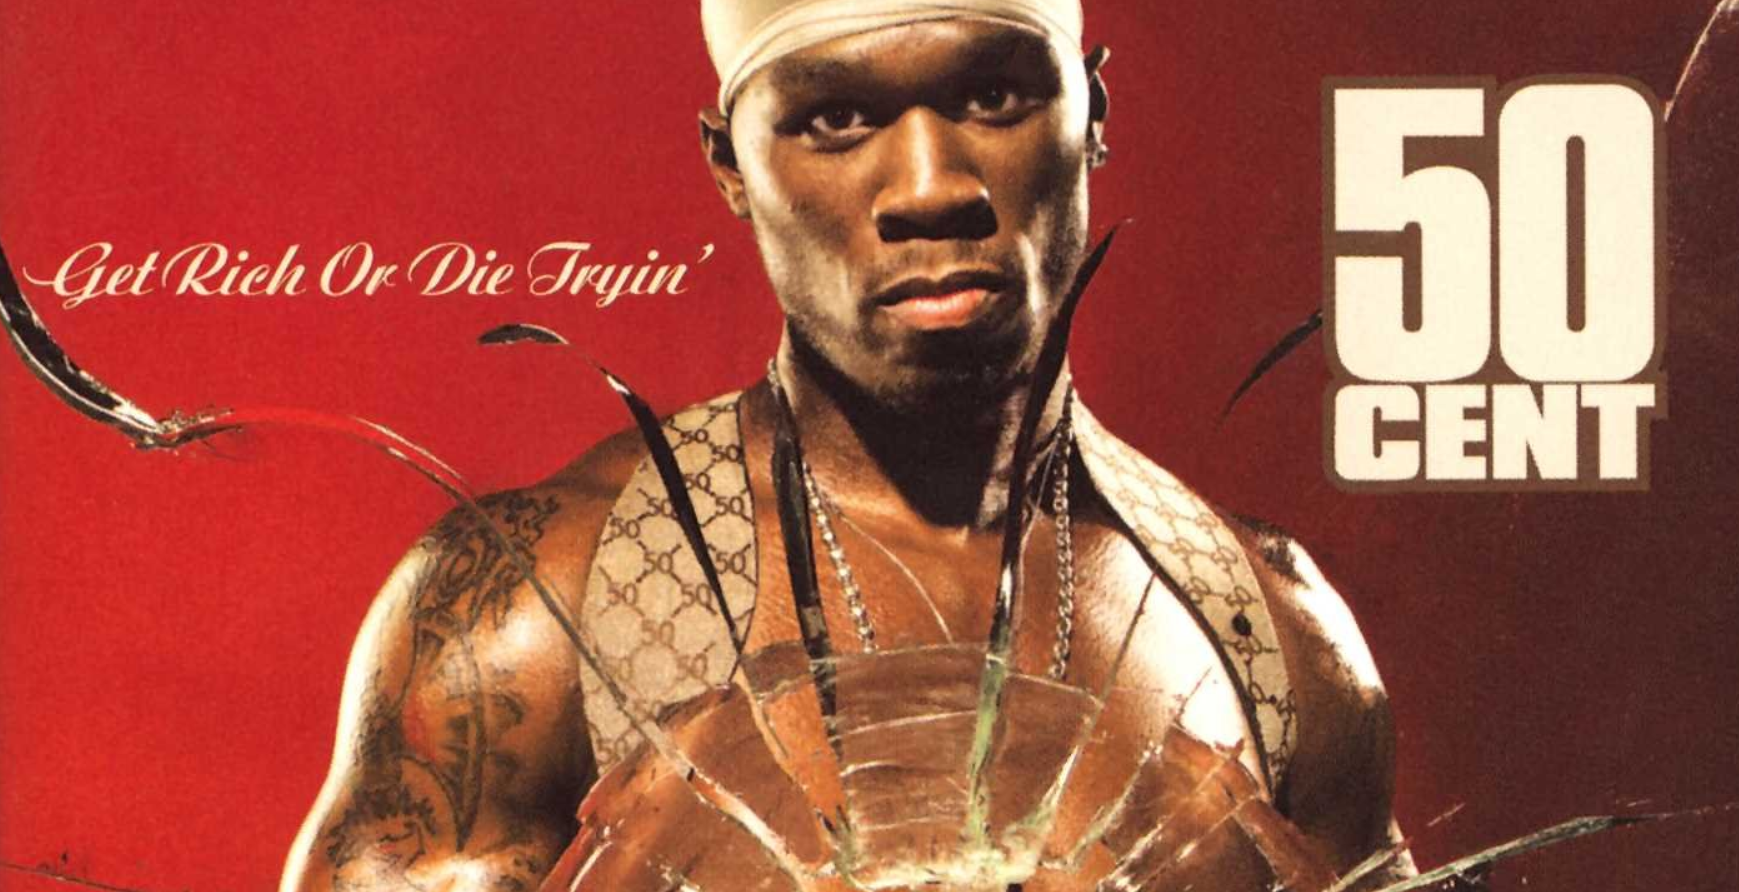 17 anos de ficar rico ou morrer tentando: fatos sobre o álbum inovador do 50 Cent